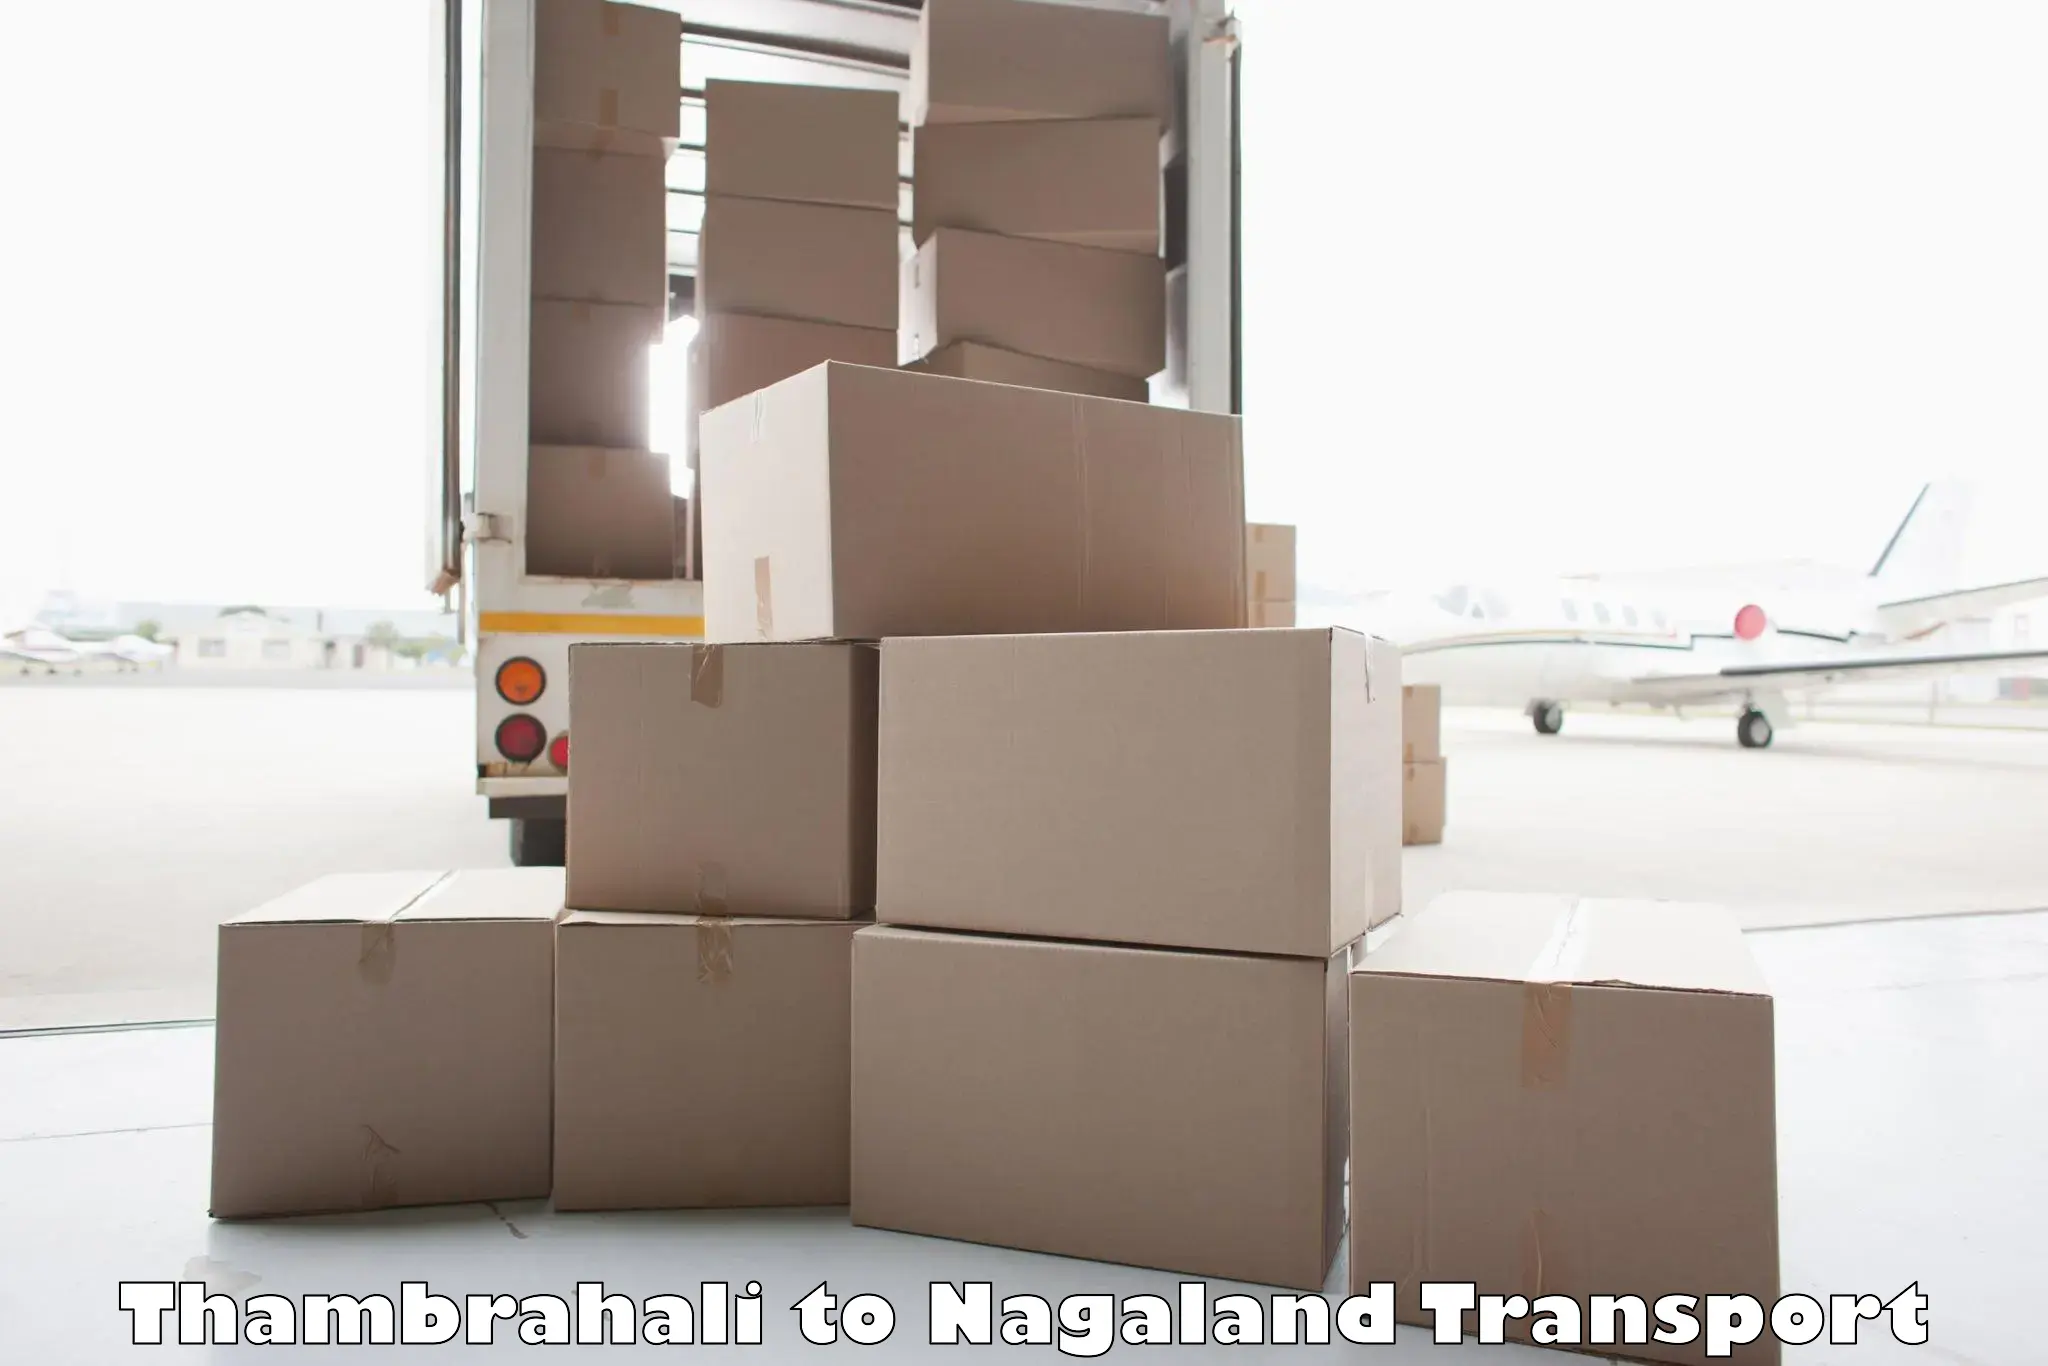 Transportation solution services Thambrahali to Nagaland